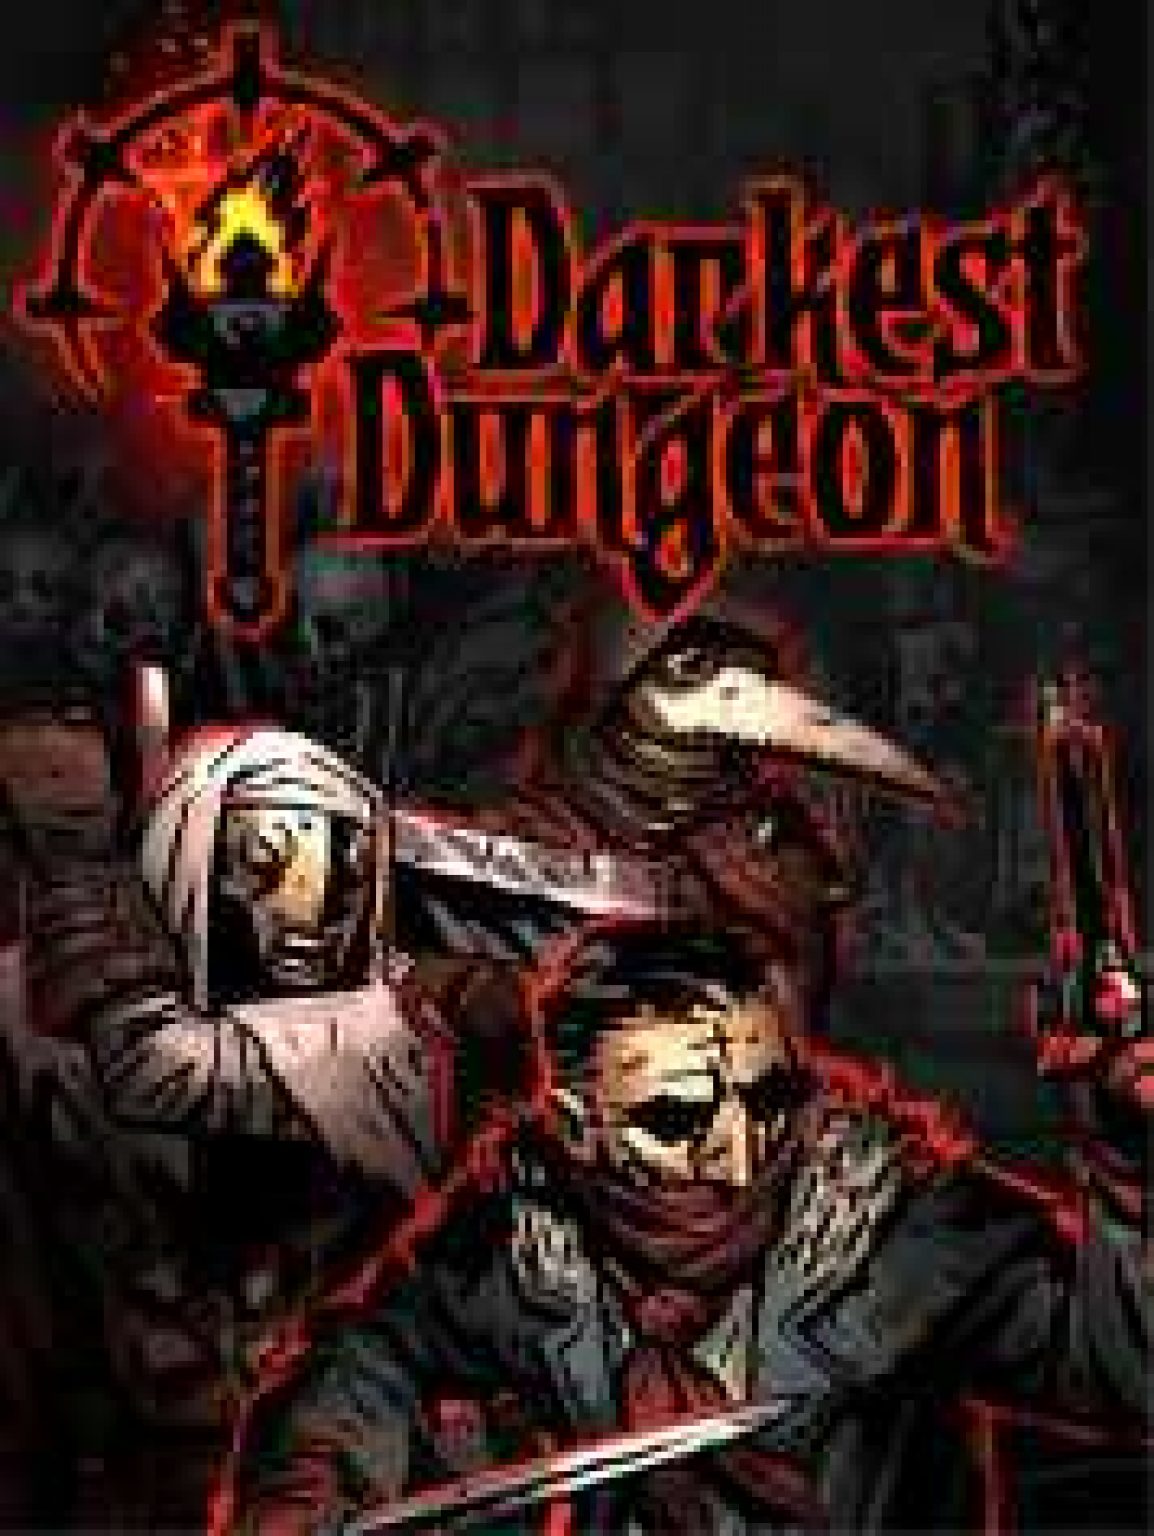 darkest dungeon free dlc